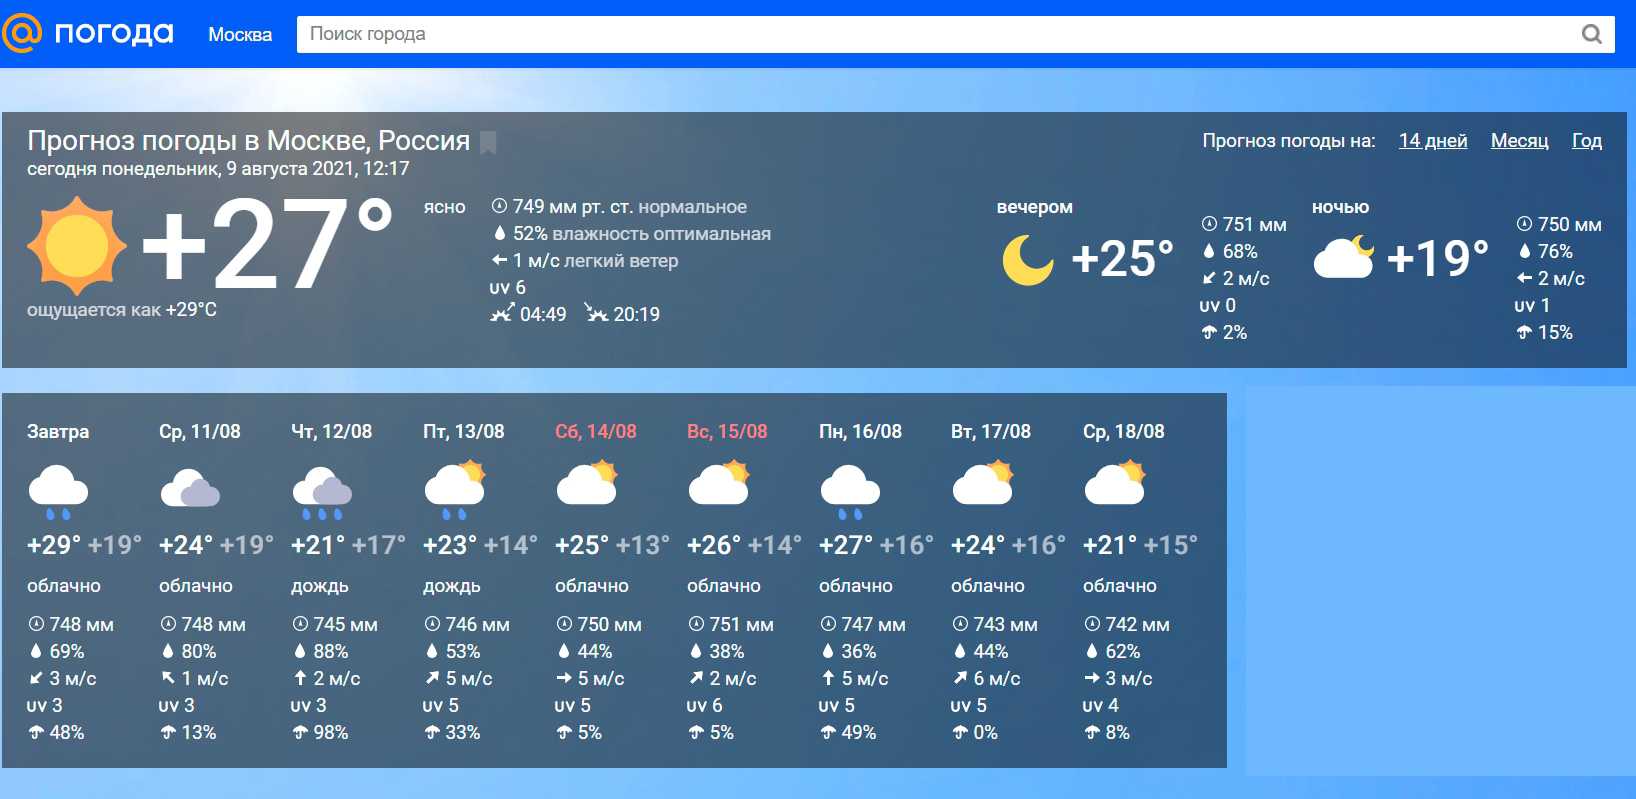 Погода на 3 дня киров самый точный. Наиболее точный прогноз погоды.. Прогноз погоды в Москве. Какой лучший сайт прогноза погоды. Какая погода самая точная.